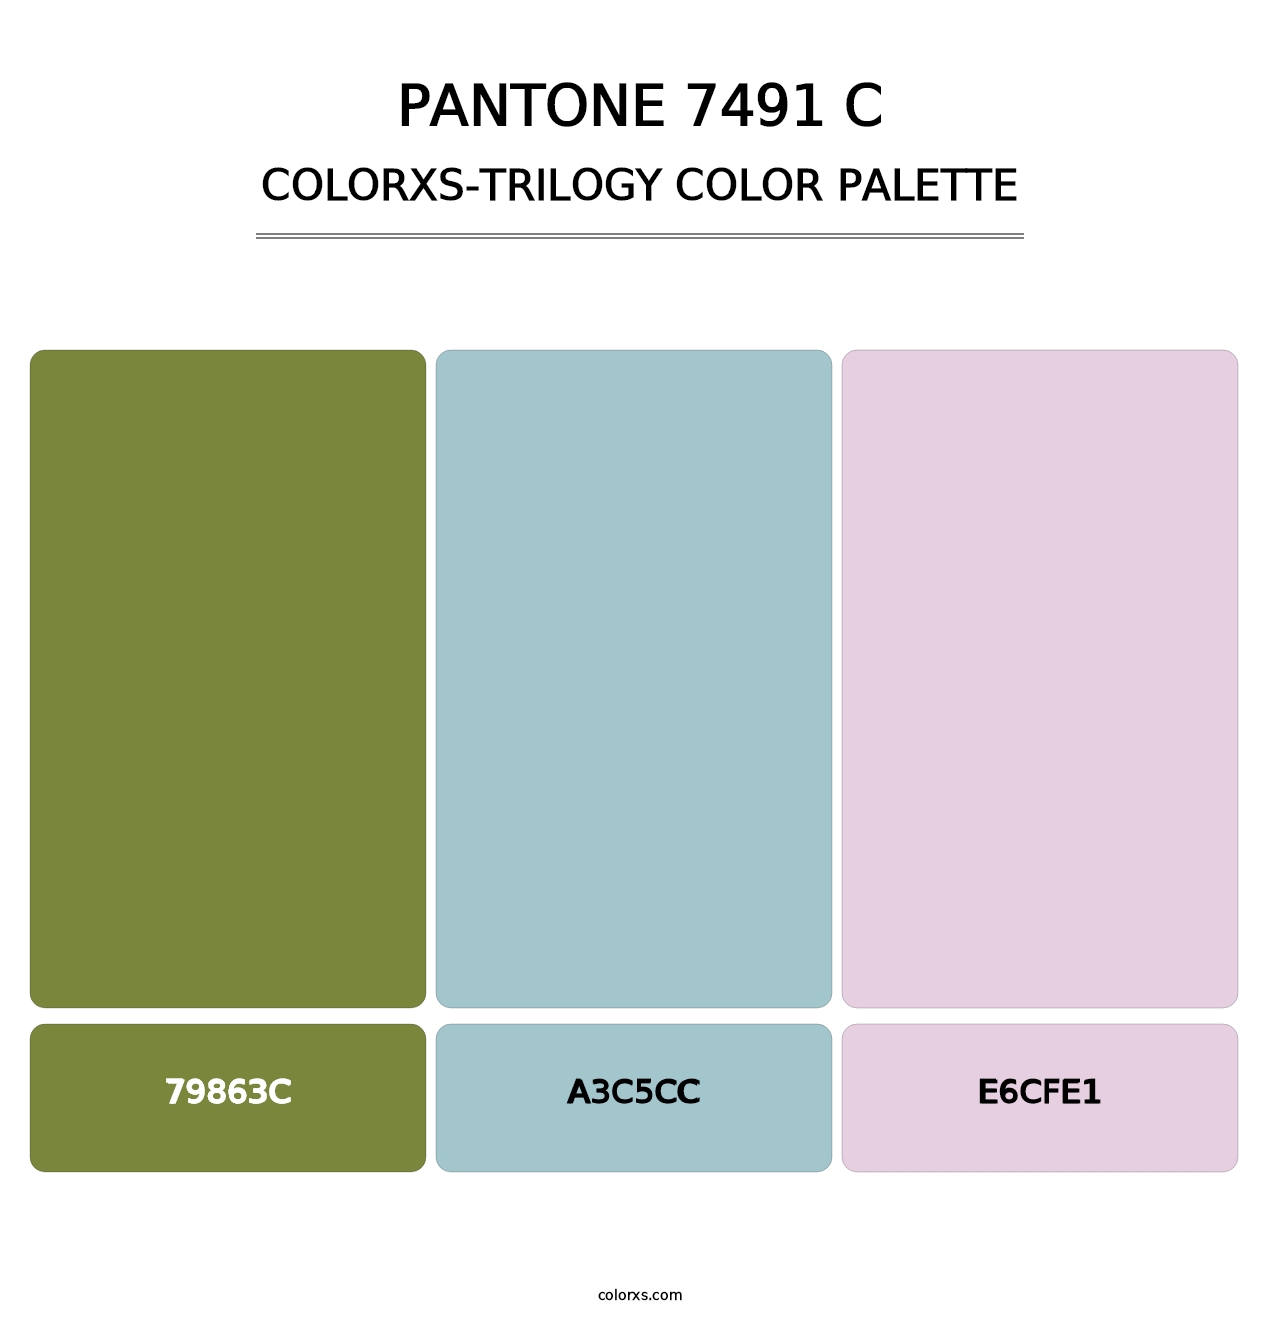 PANTONE 7491 C - Colorxs Trilogy Palette